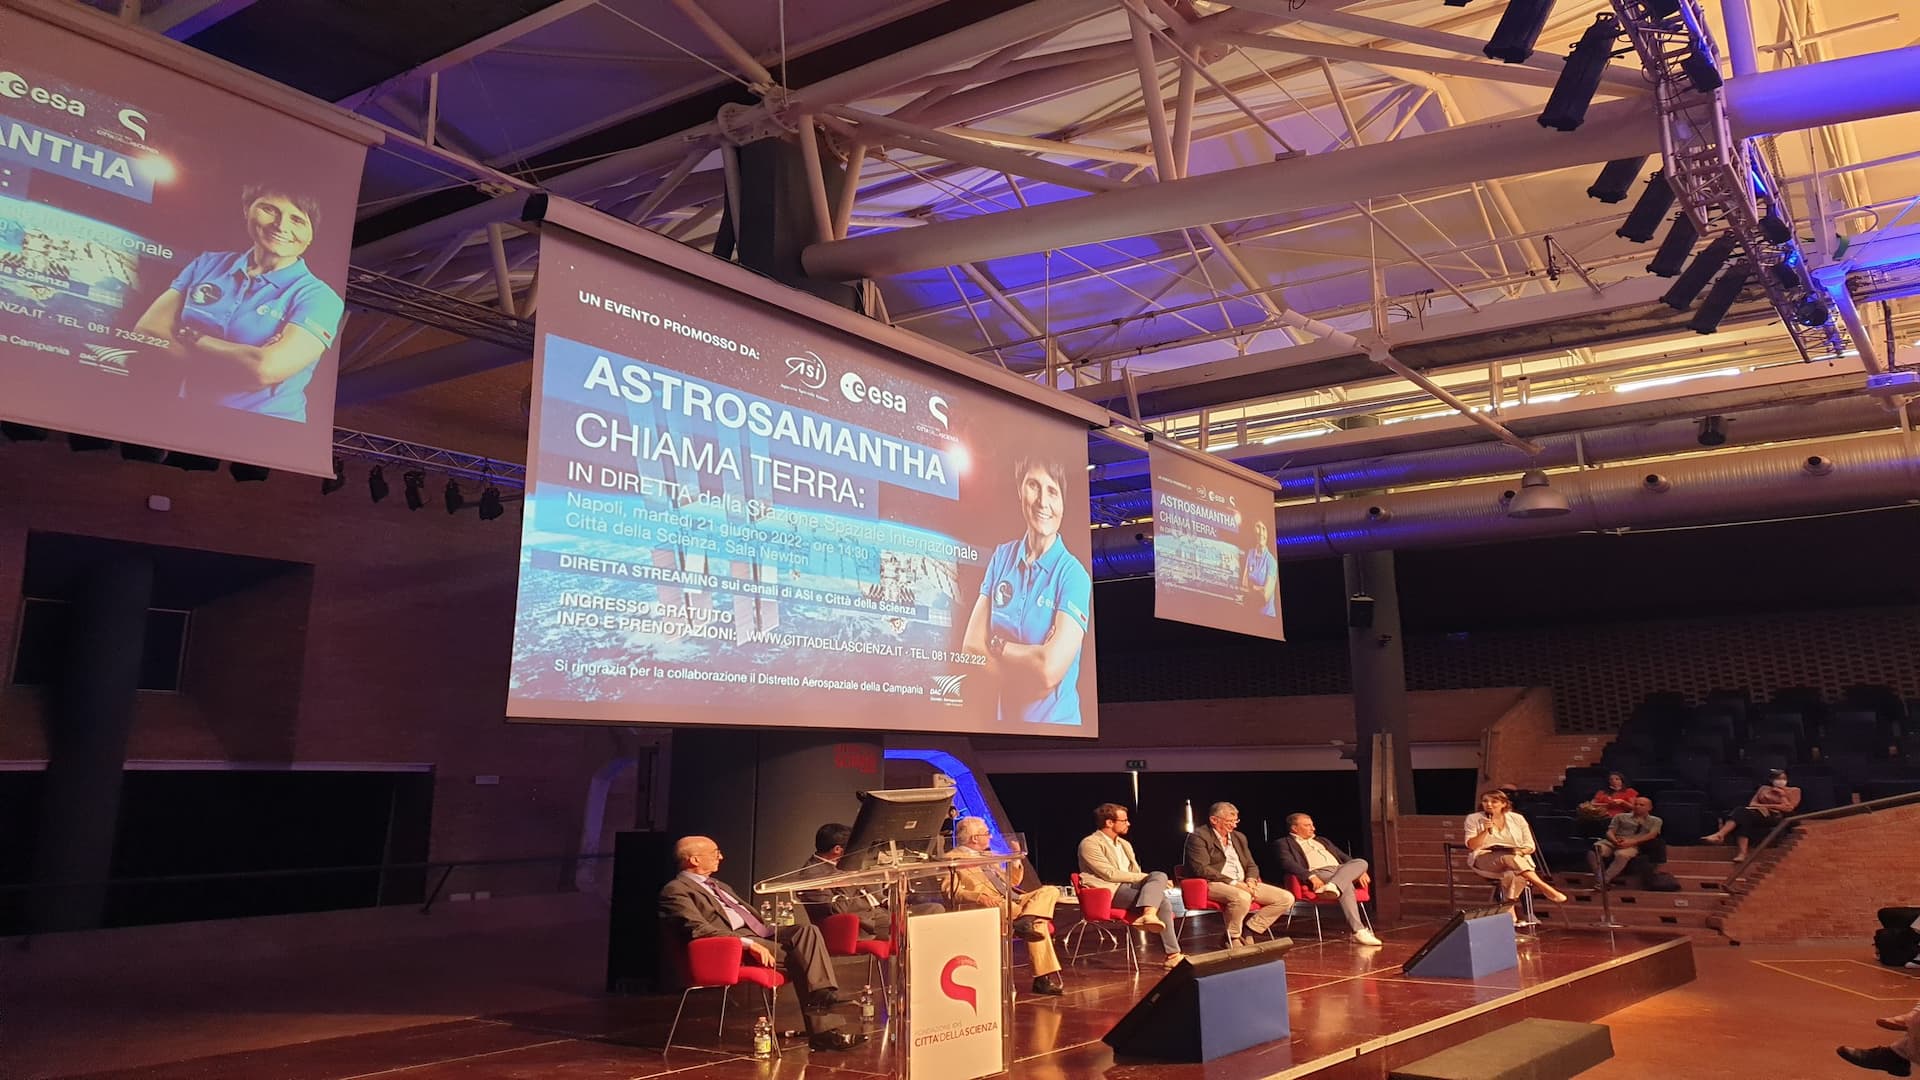 ASI - AstroSamantha chiama Terra, collegamento con Città della Scienza